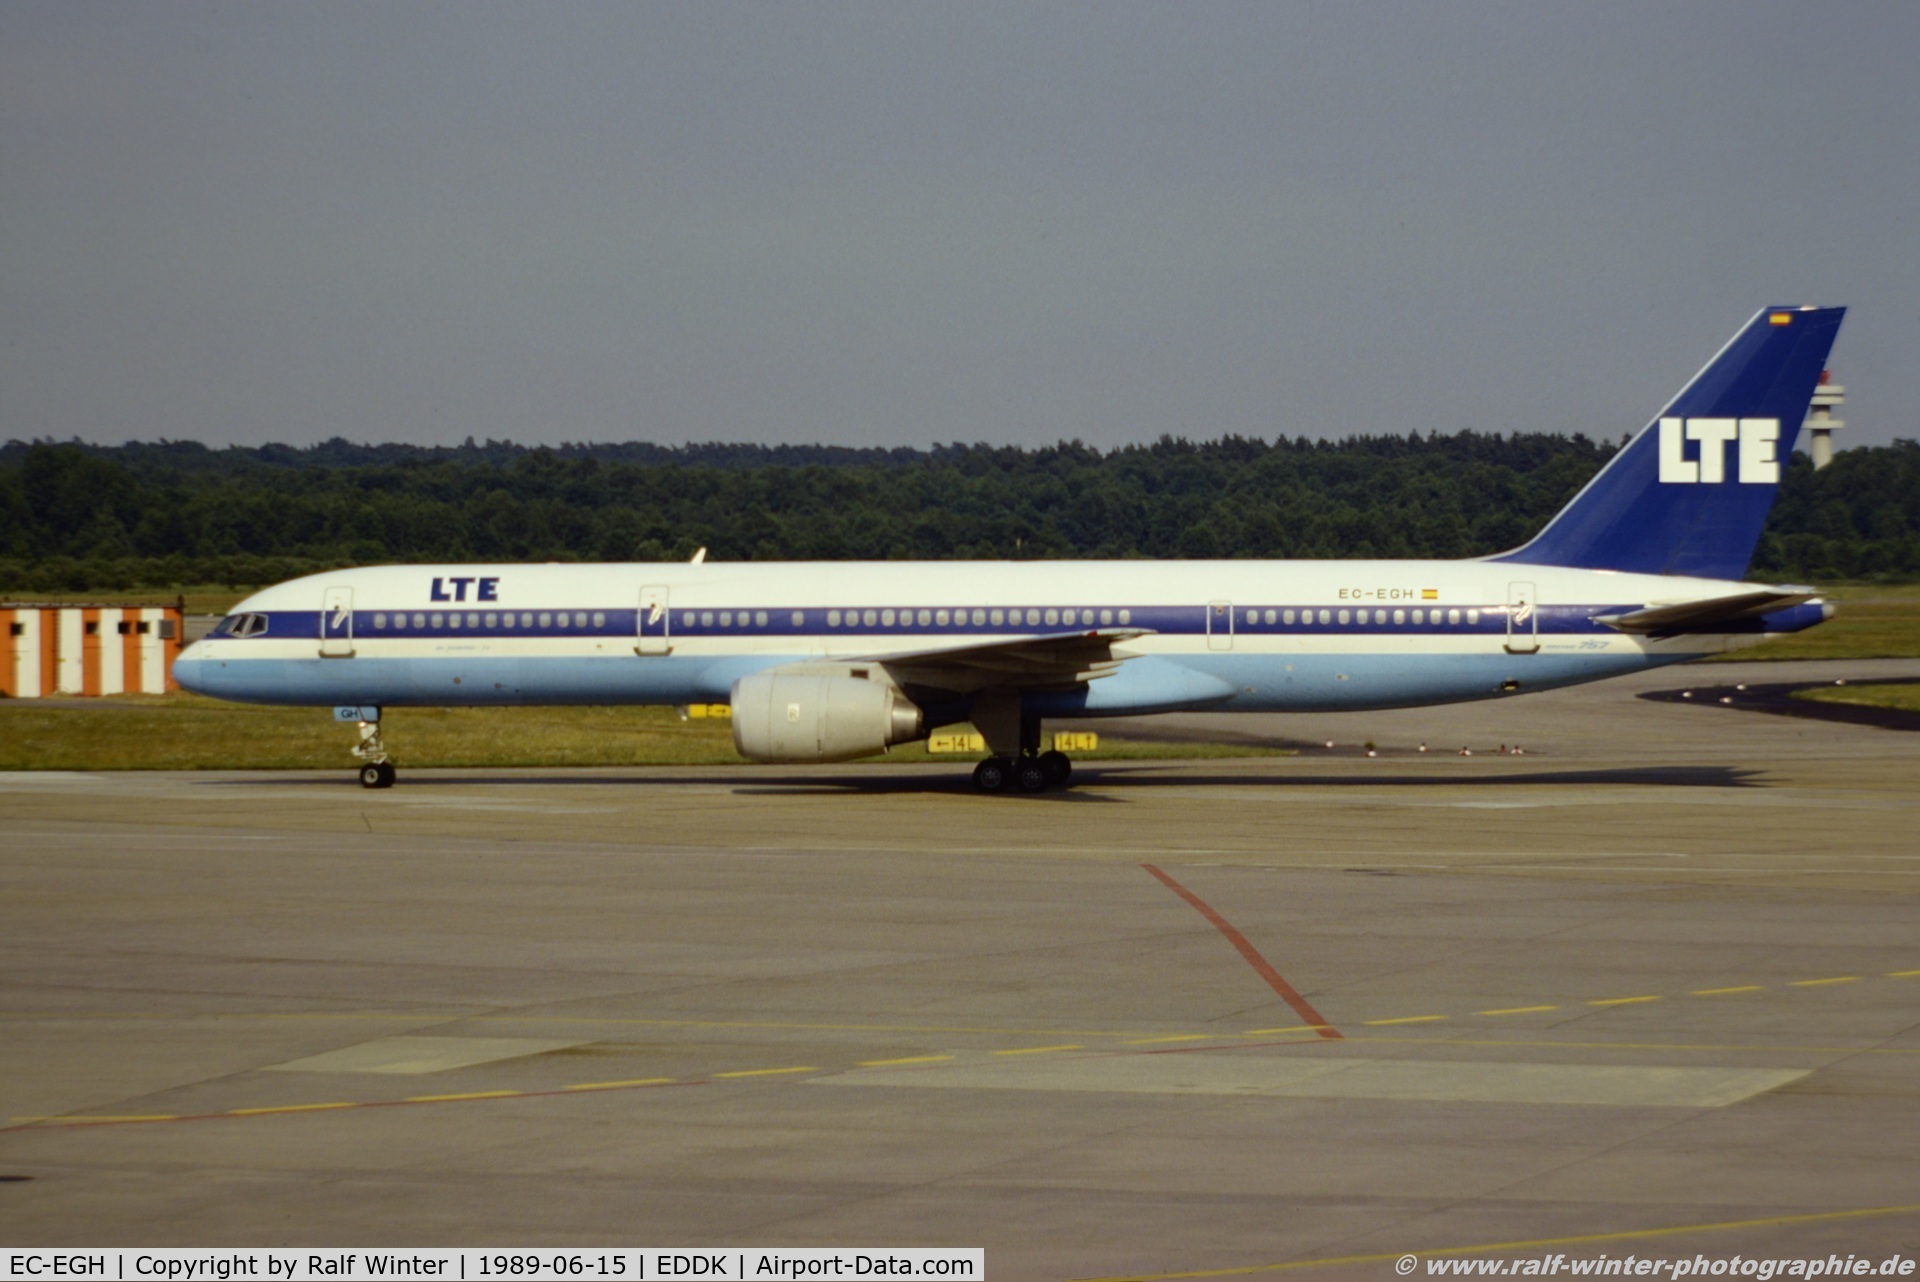 EC-EGH, 1984 Boeing 757-2G5 C/N 23119, Boeing 757-2G5 - XO LTE LTE International Airways 'Bluebird II' - 23119 - EC-EGH - 15.06.1989 - CGN